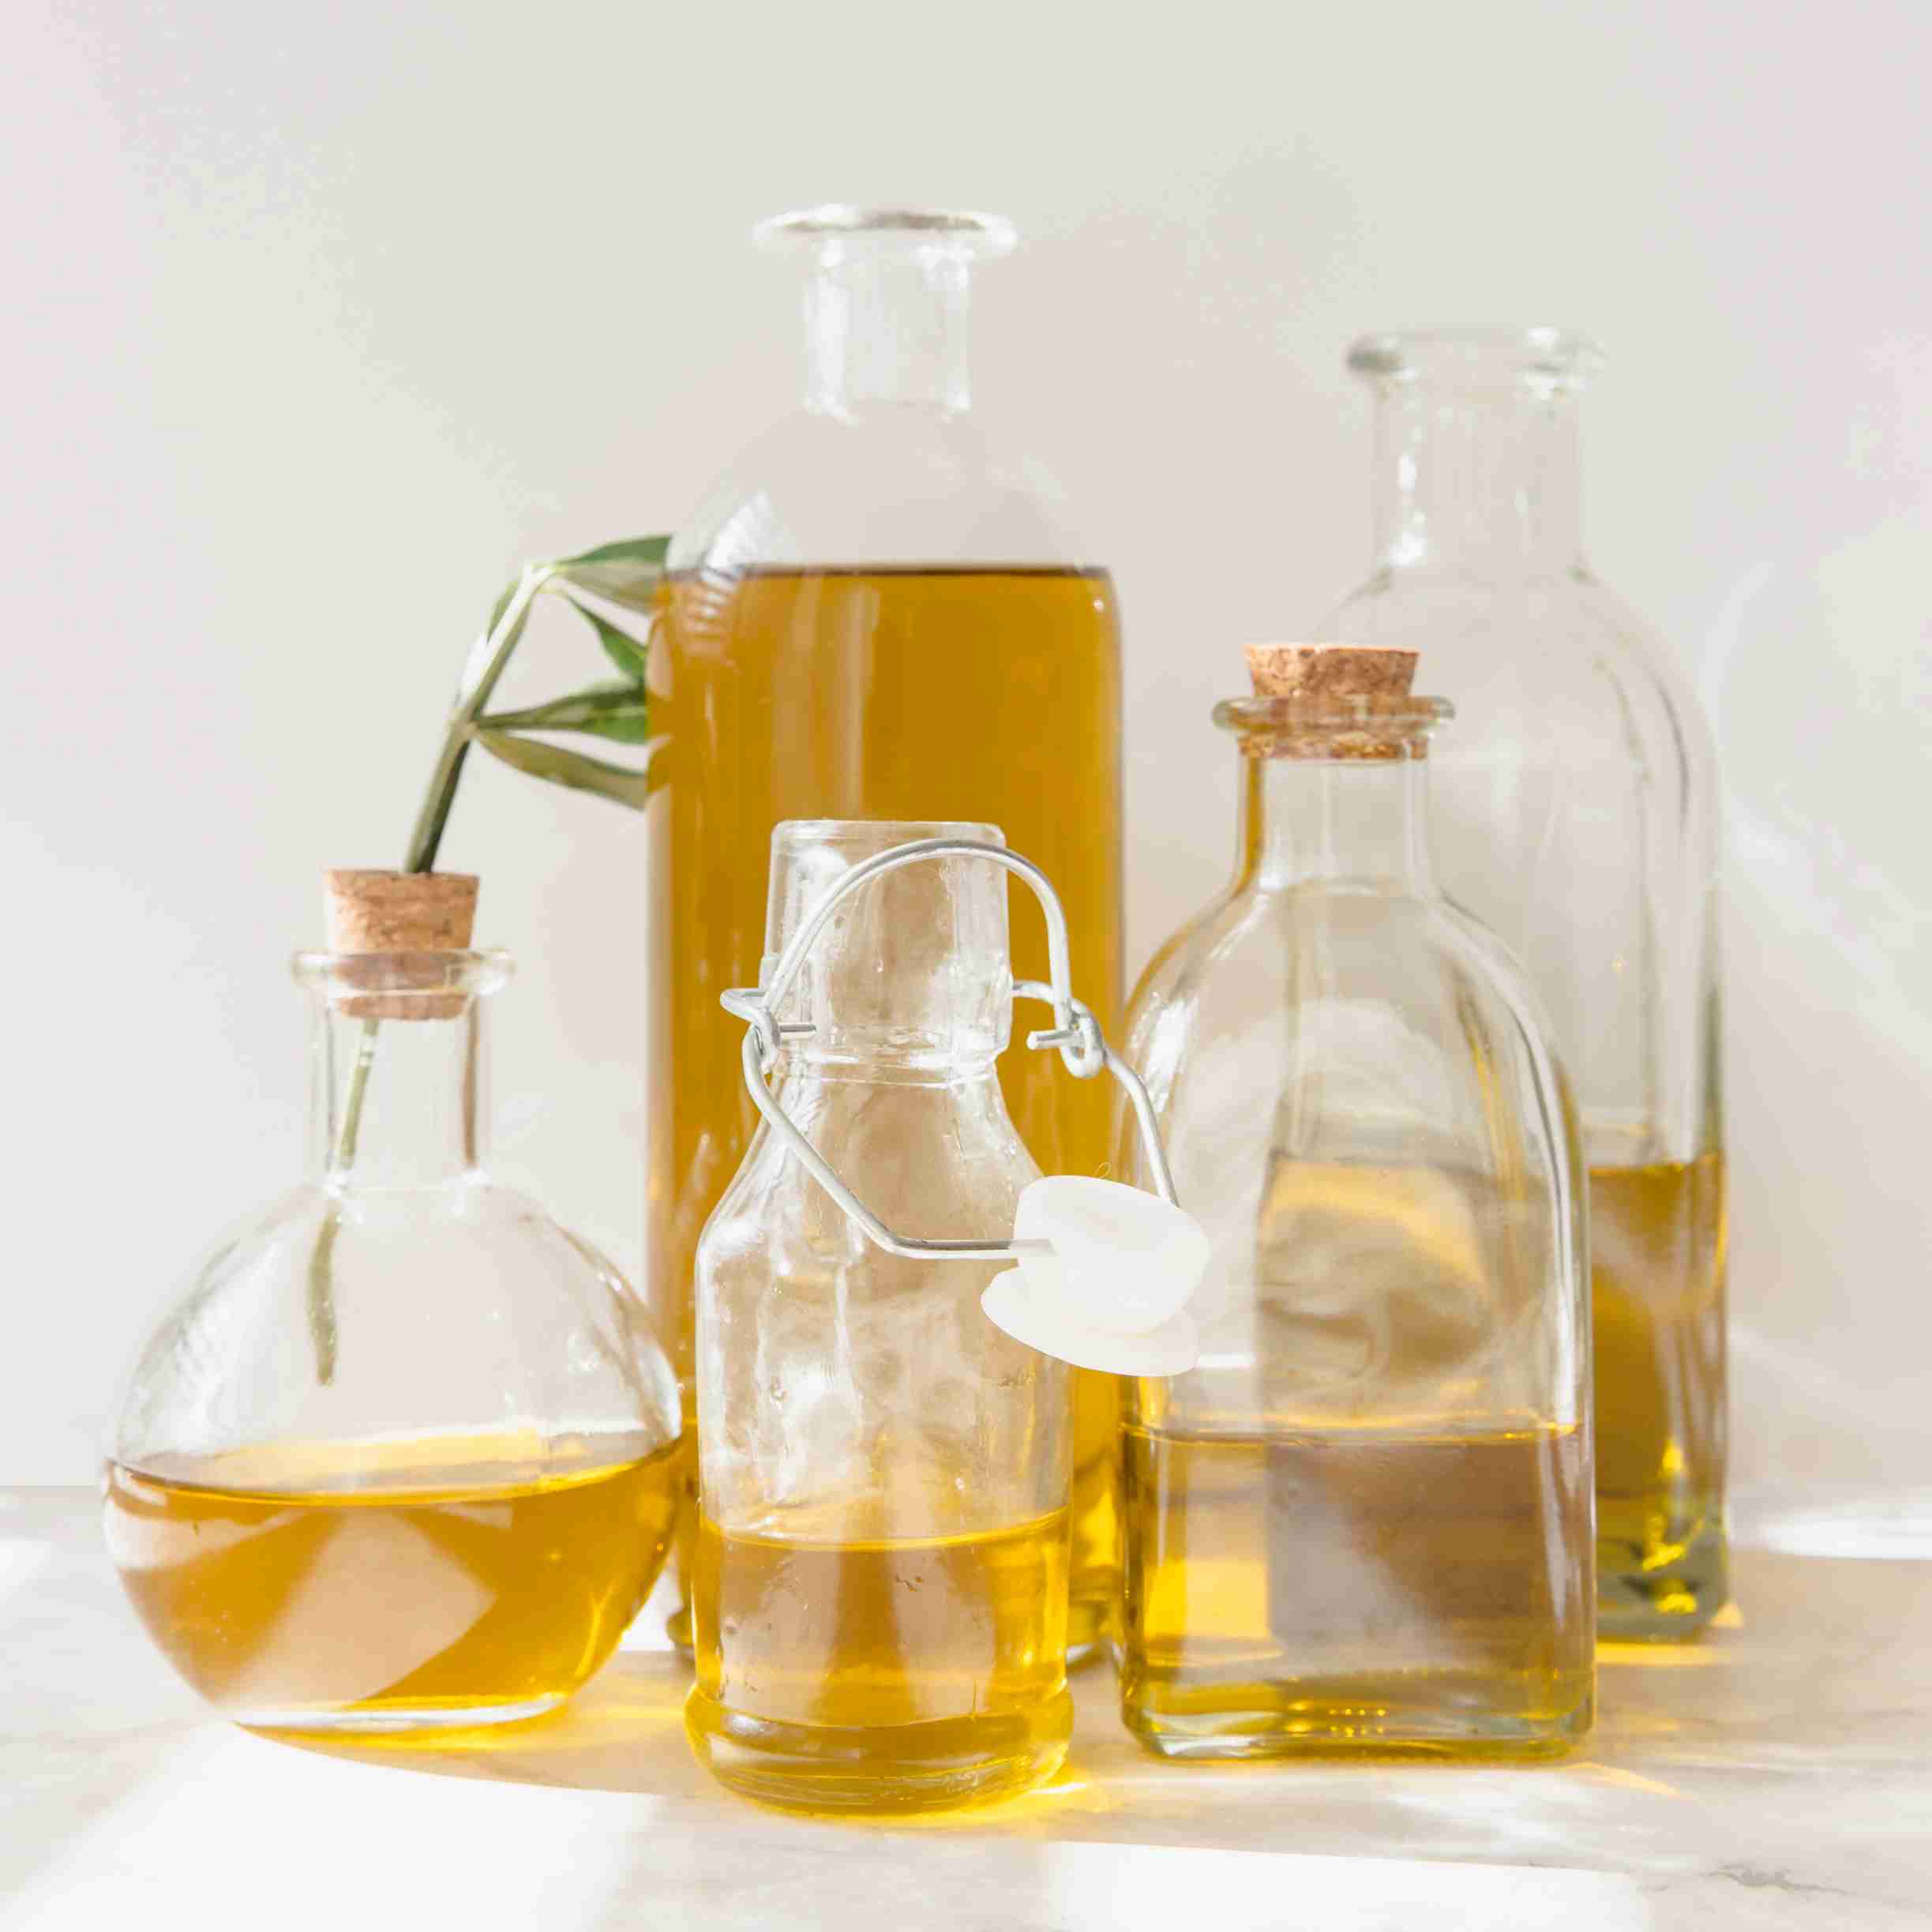 mustard vs groundnut oils